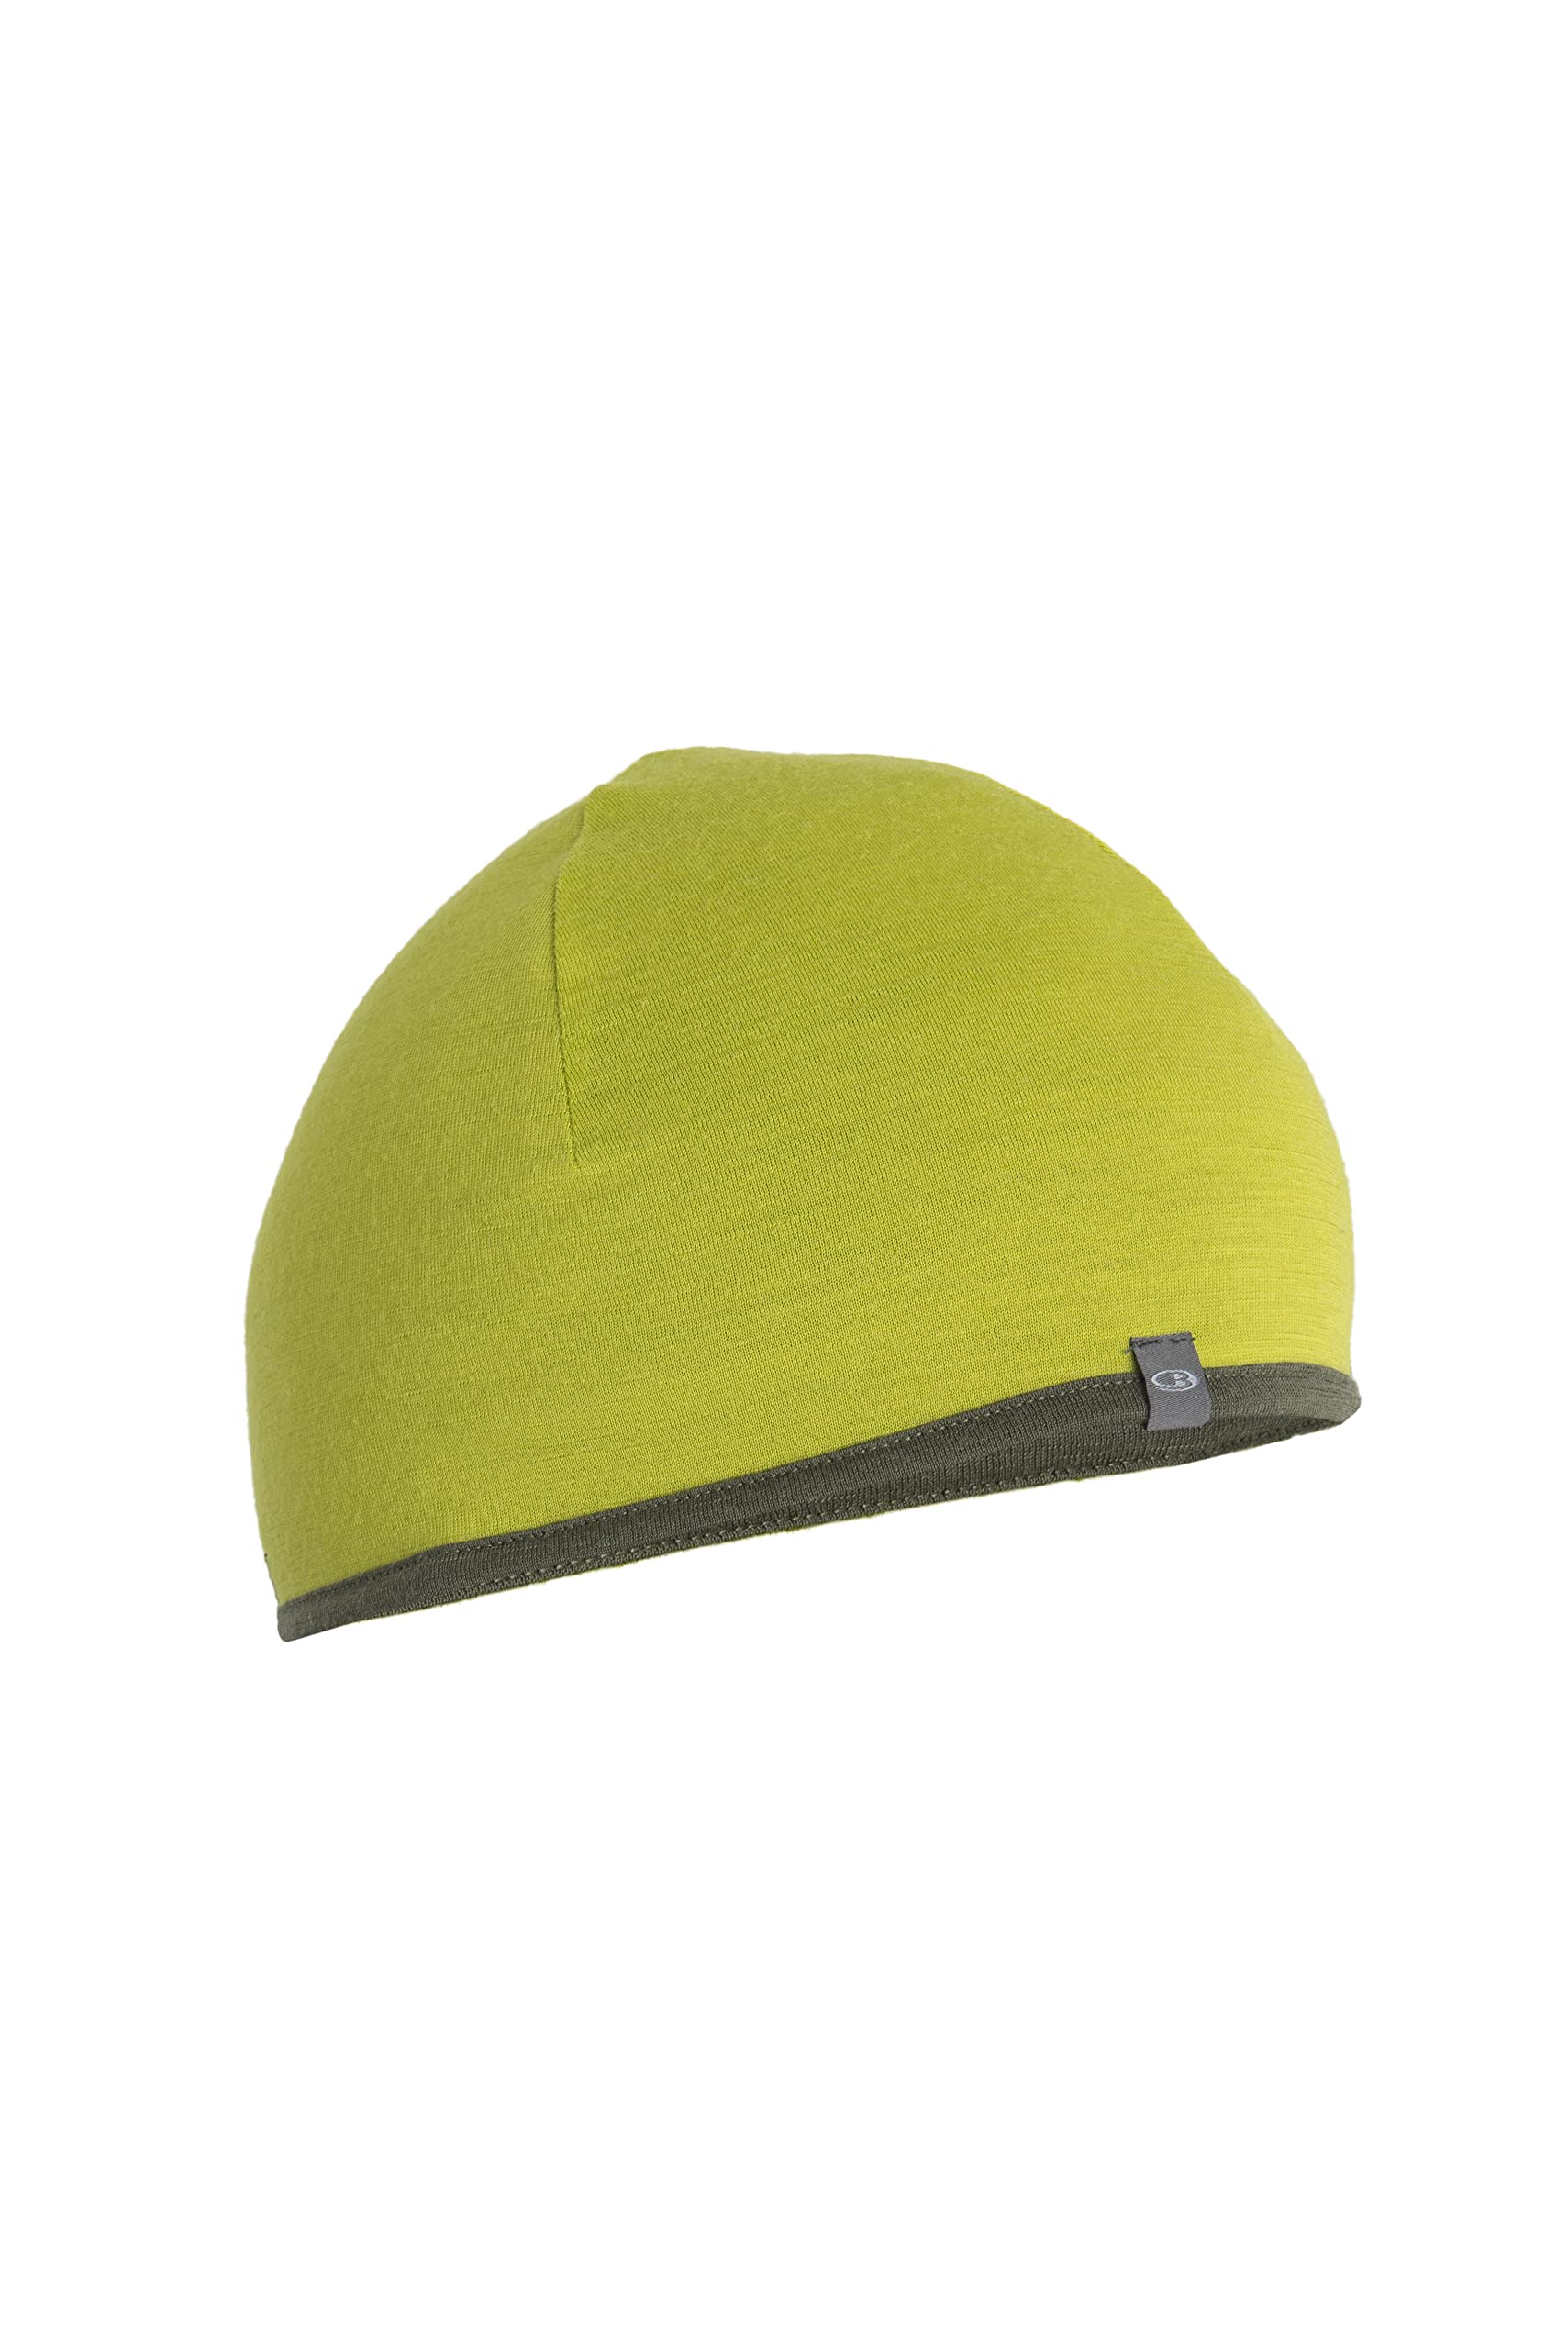 Icebreaker Merino Unisex-Erwachsene Pocket Hat Winter Wolle Beanie Mütze, Bio Lime/Loden, One Size